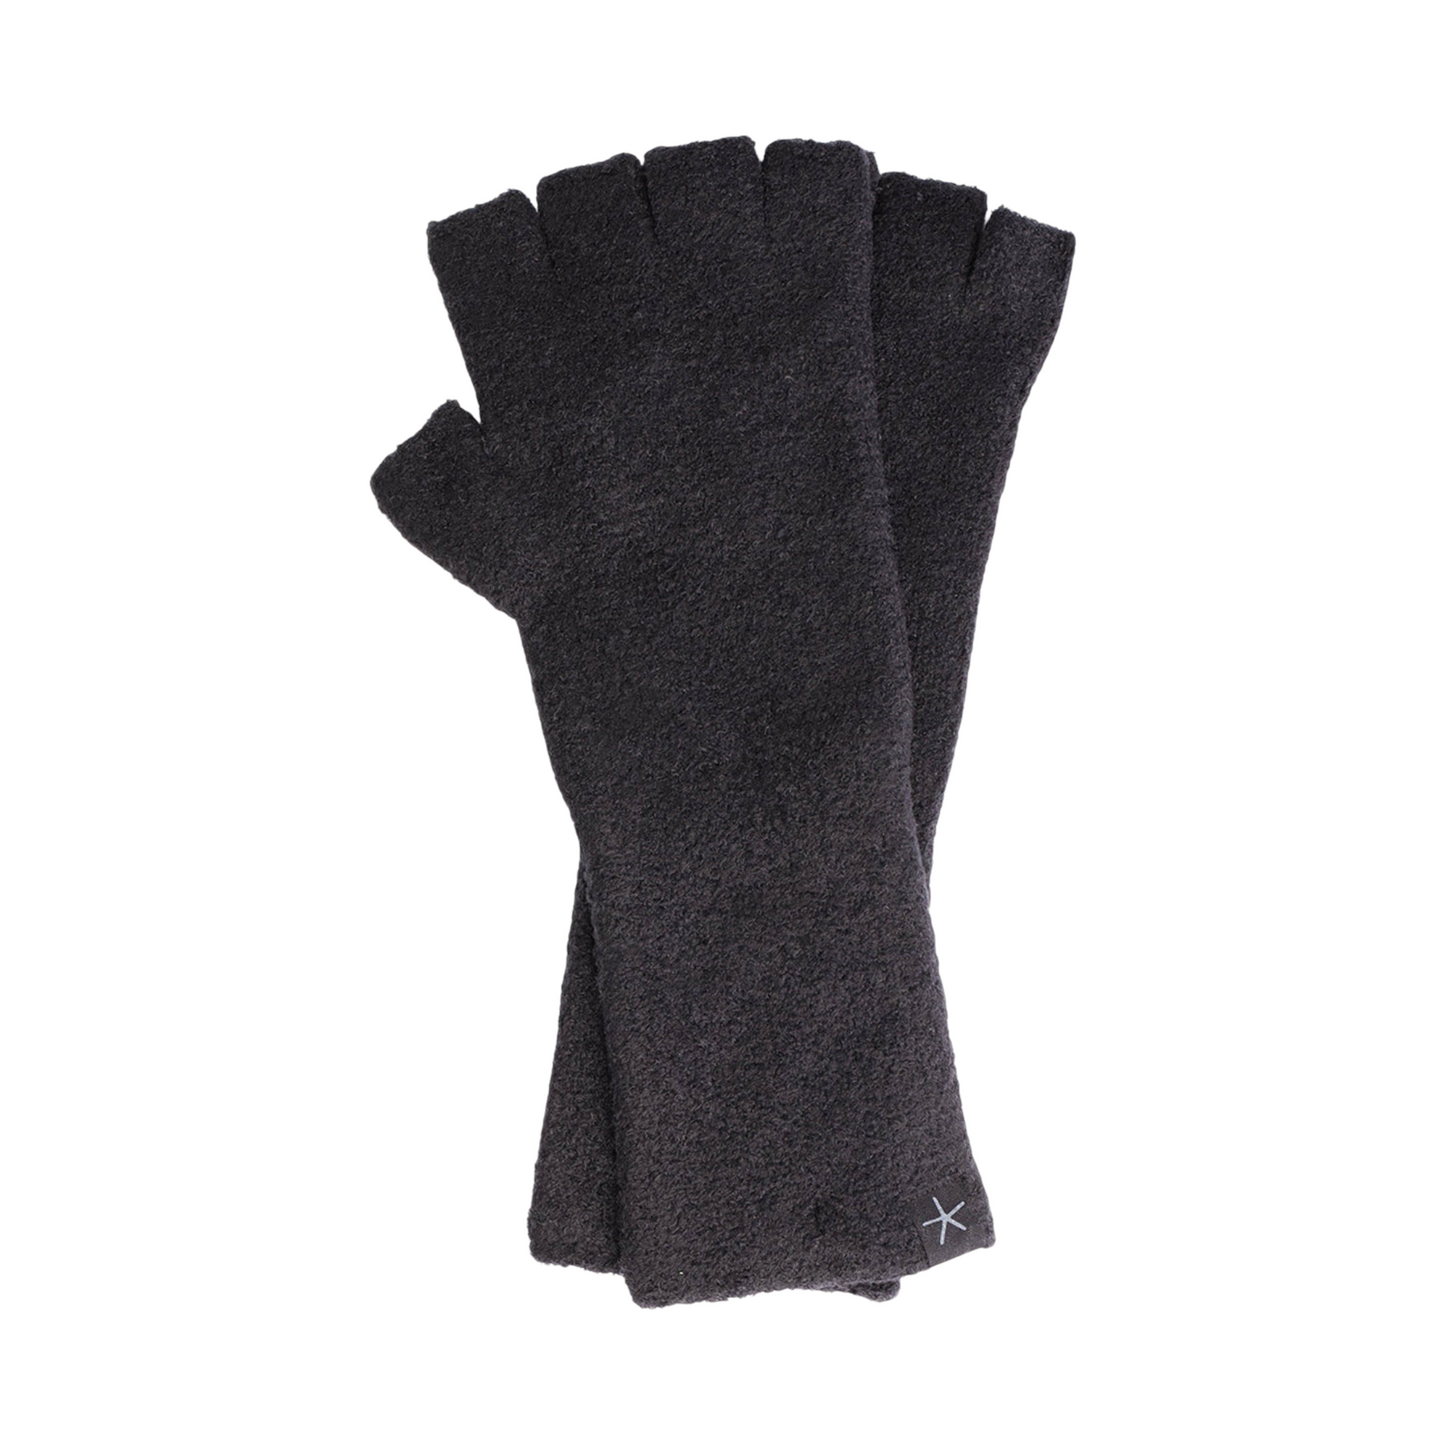 CozyChic Fingerless Gloves